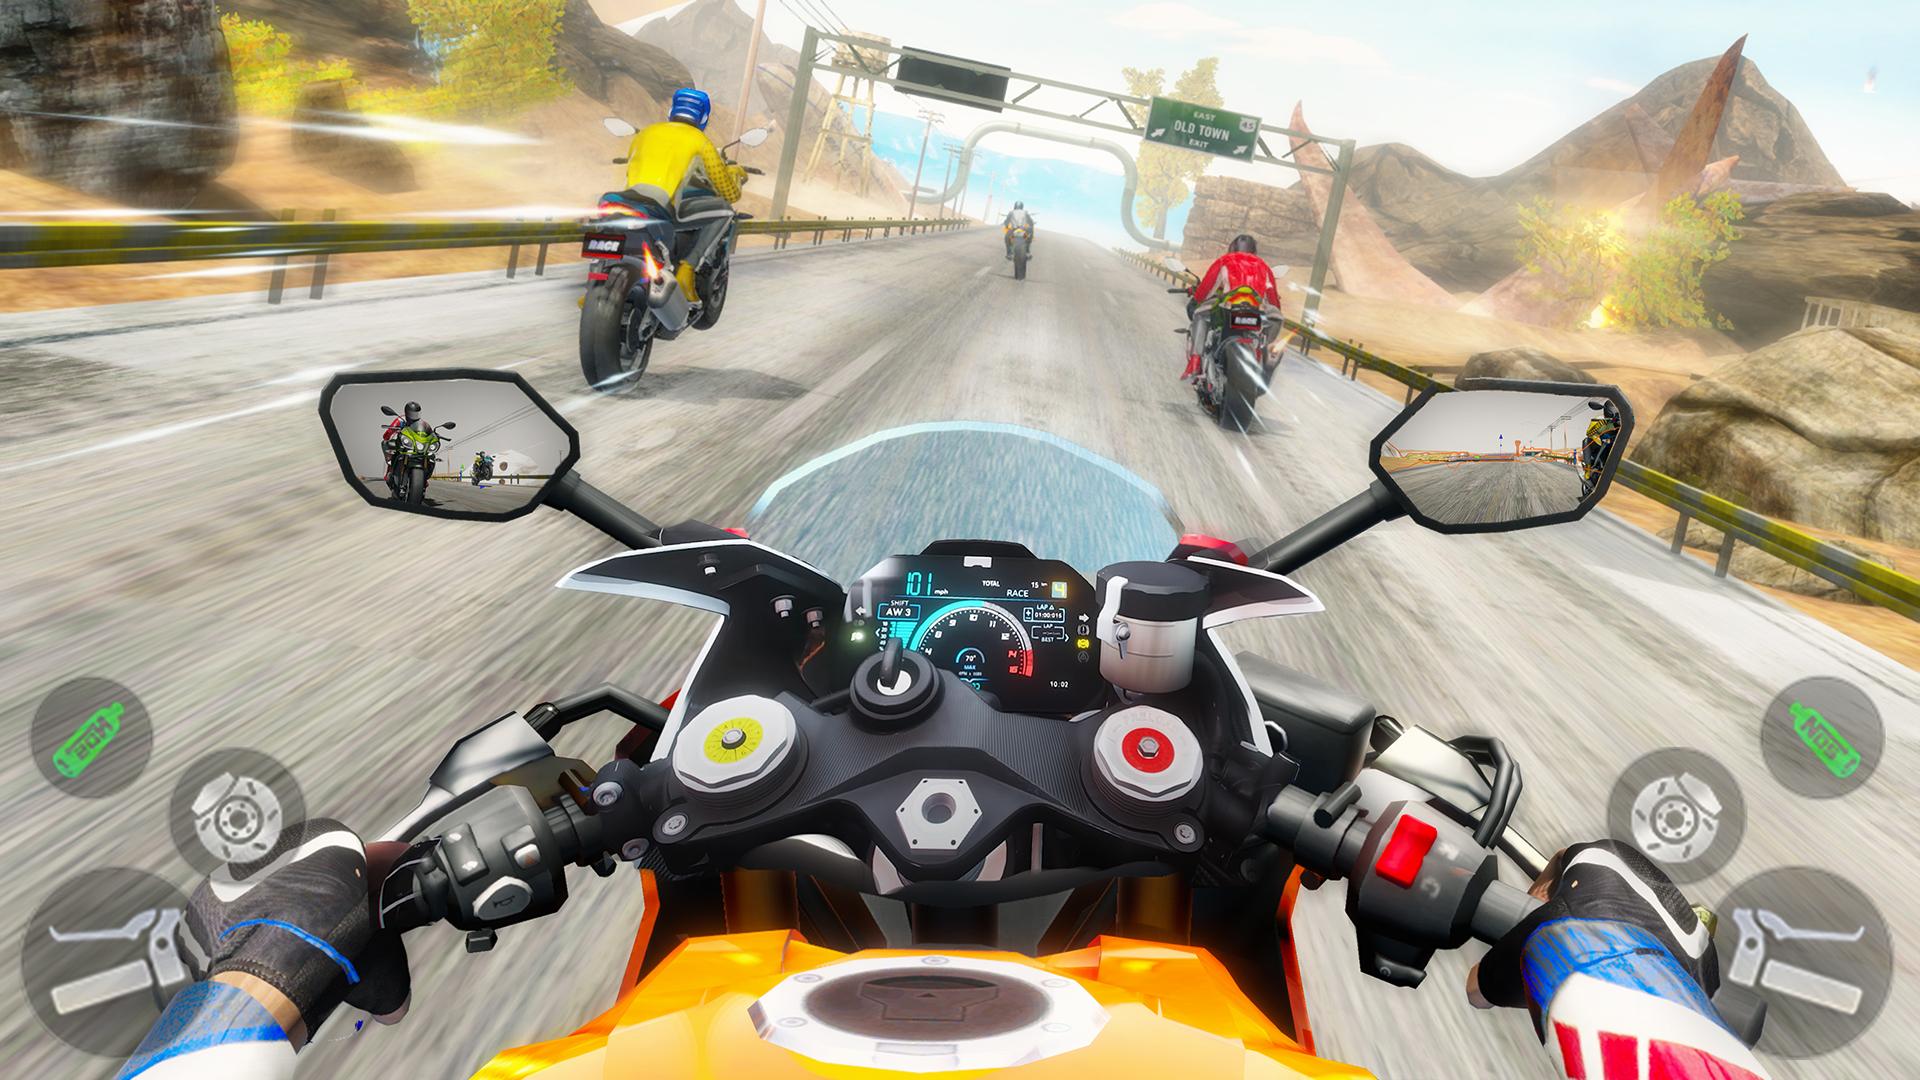 Juego de Motos - Moto Police Rider - Juegos de Carreras de Motos 